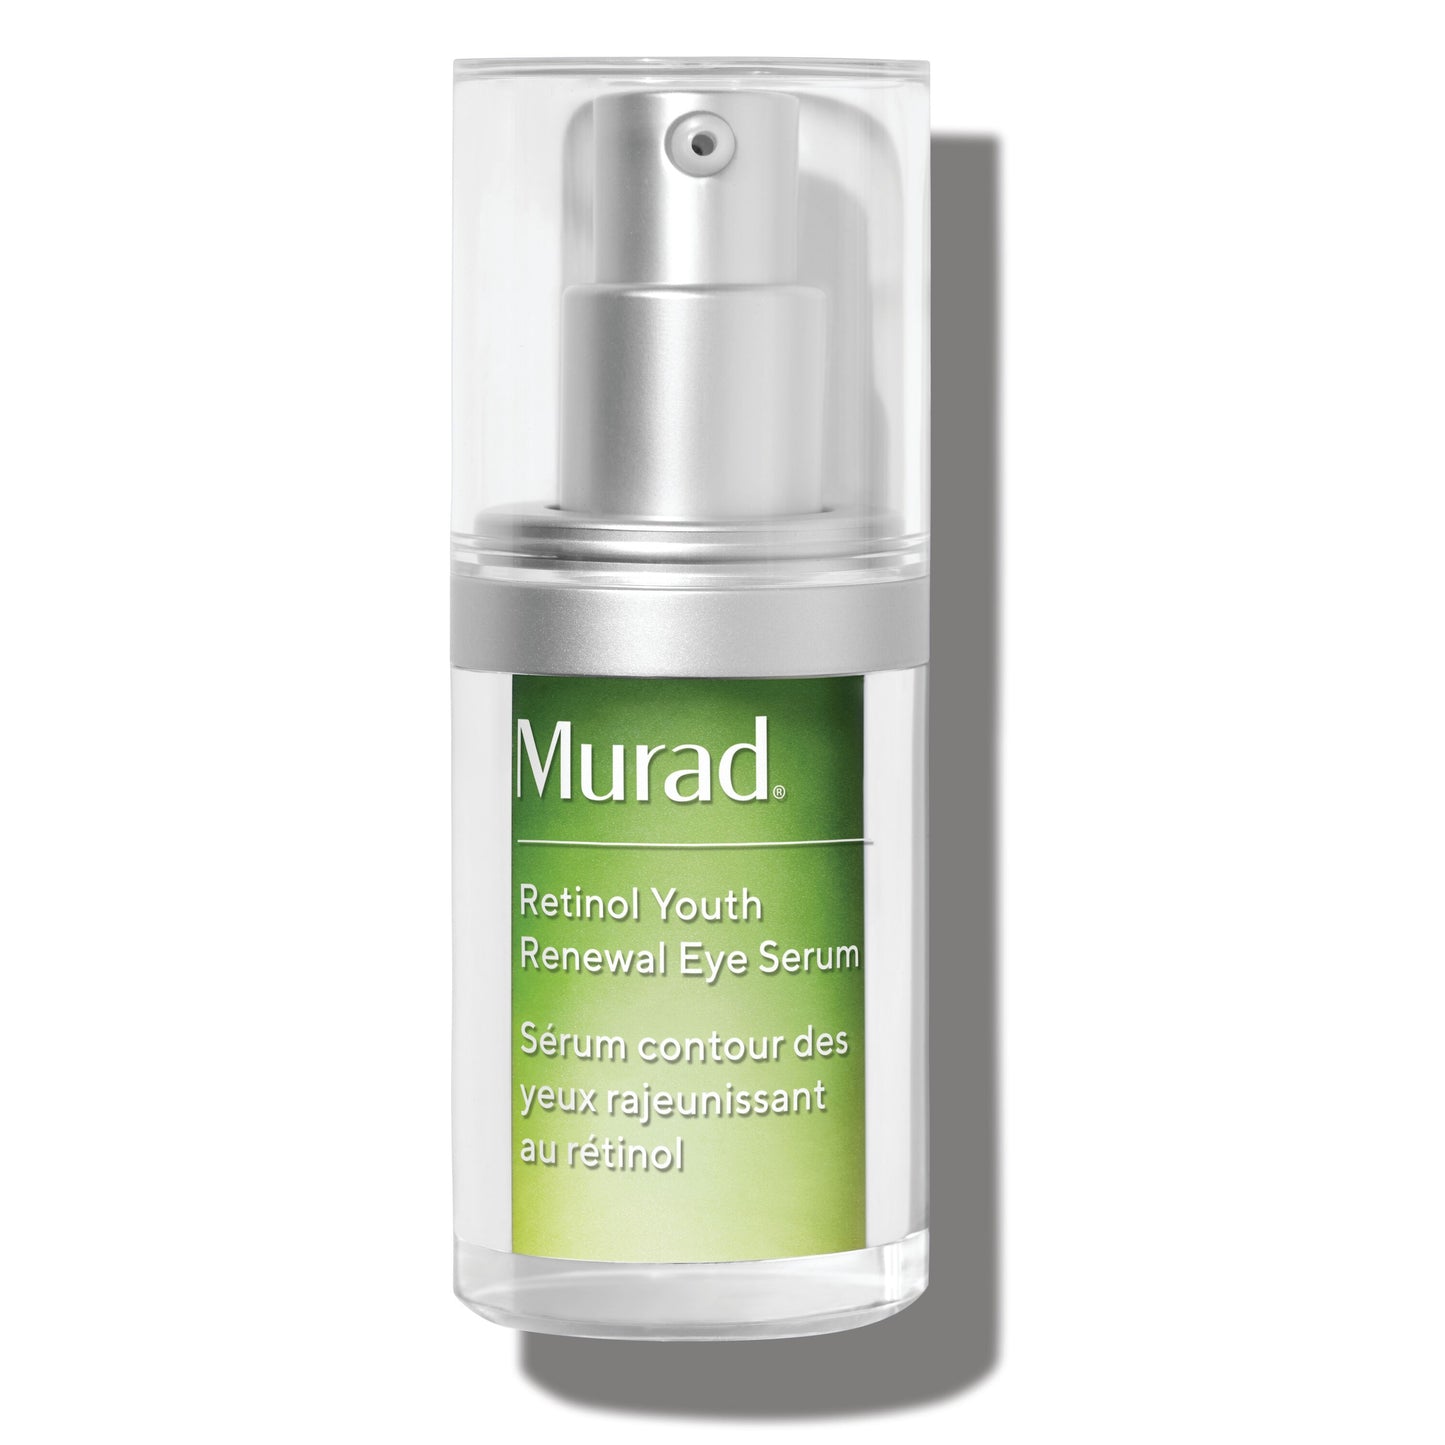 Murad Retinol Youth Renewal Eye Serum  - The #1 retinol eye serum in the U.S.*